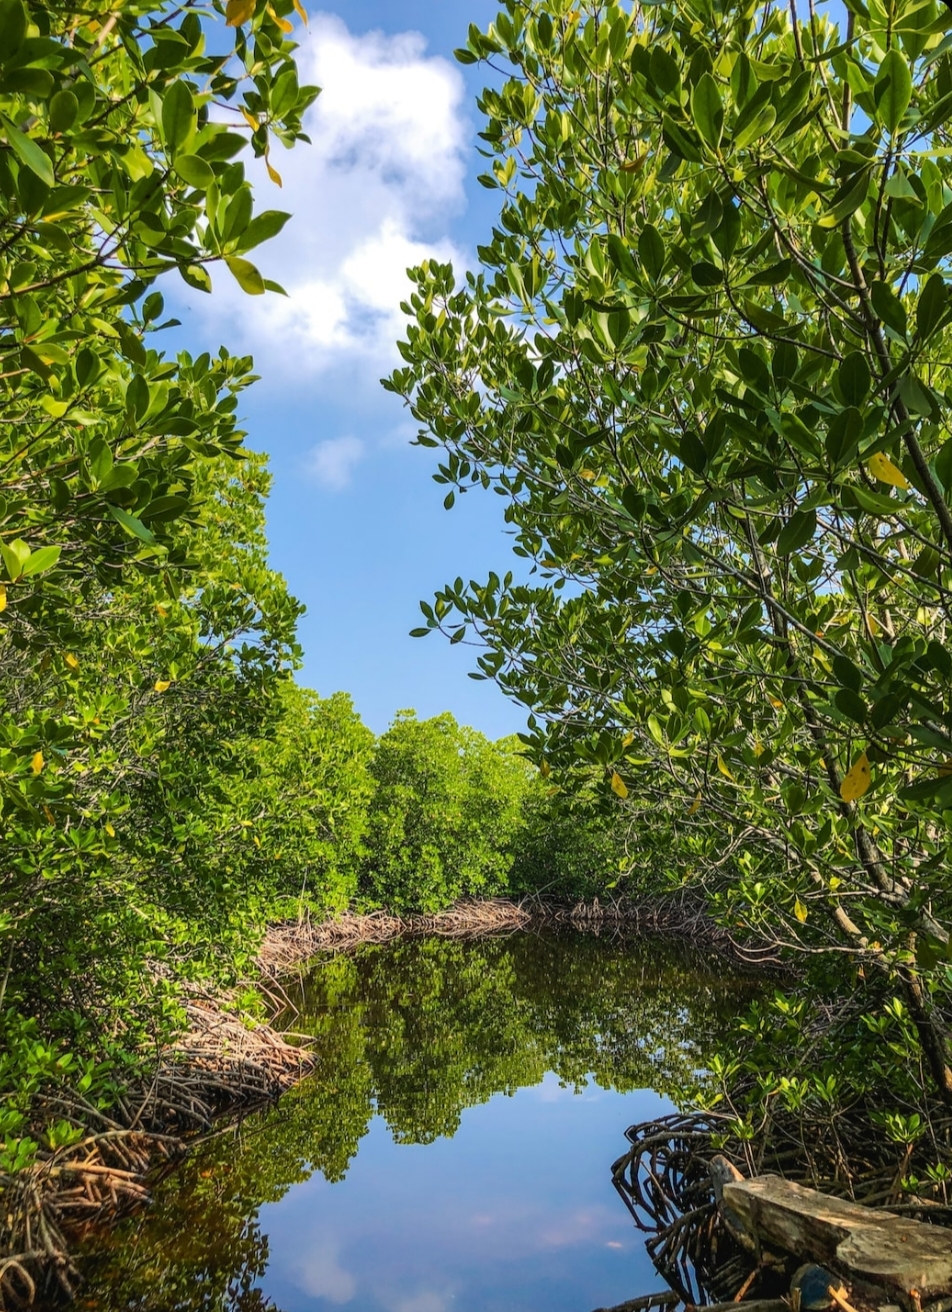 Hutan Mangrove di Pesisir Sungai Cirebon Jadi Objek Wisata